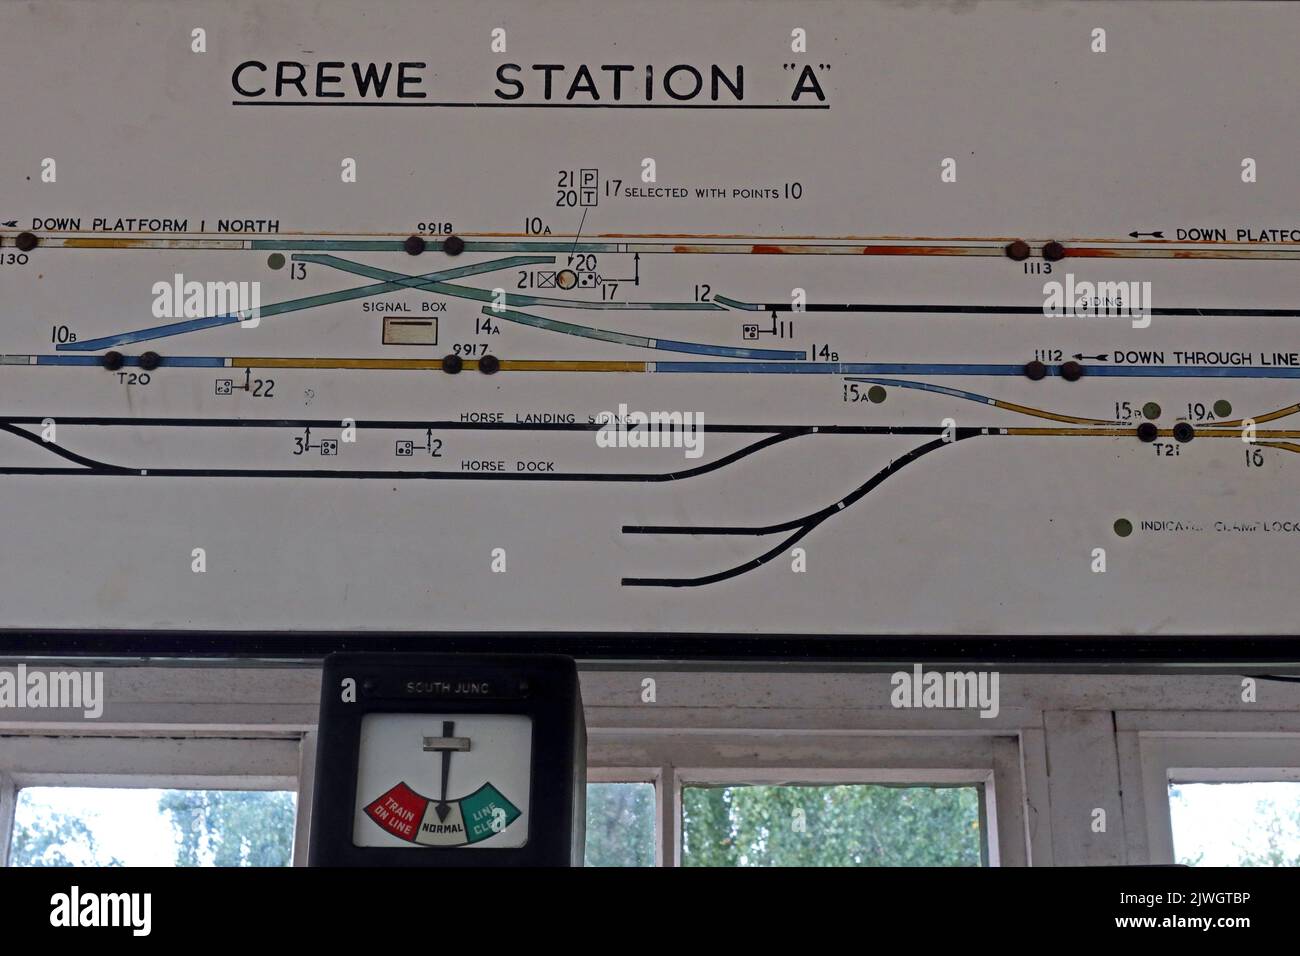 Schematische Darstellung der traditionellen viktorianischen Bahnbahnschilder, Crewe Station A, in Cheshire, England, Großbritannien, CW1 2DB Stockfoto